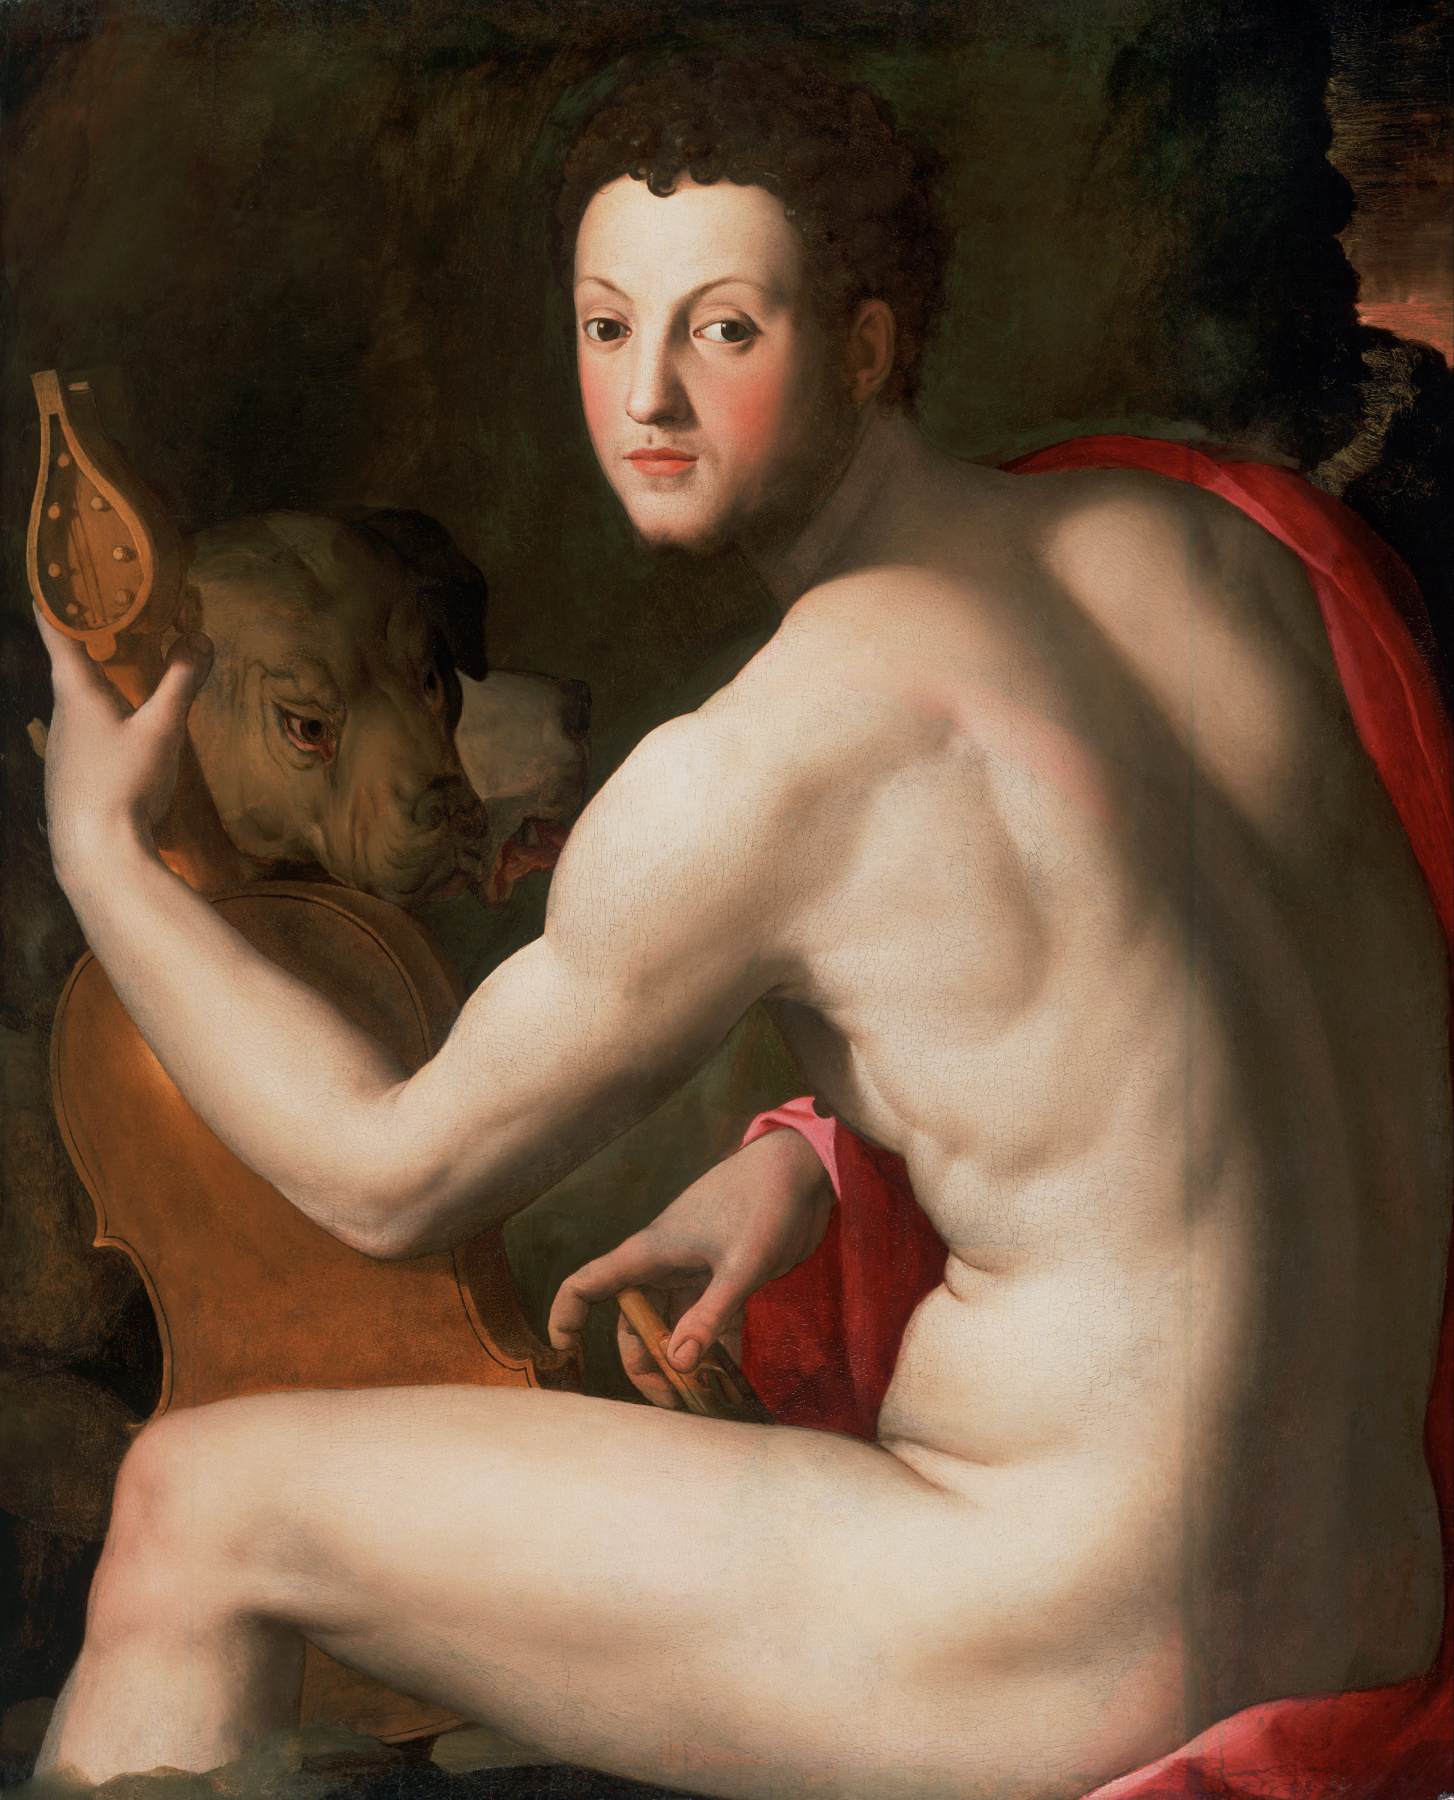 Cosimo I af Medici som Orpheus